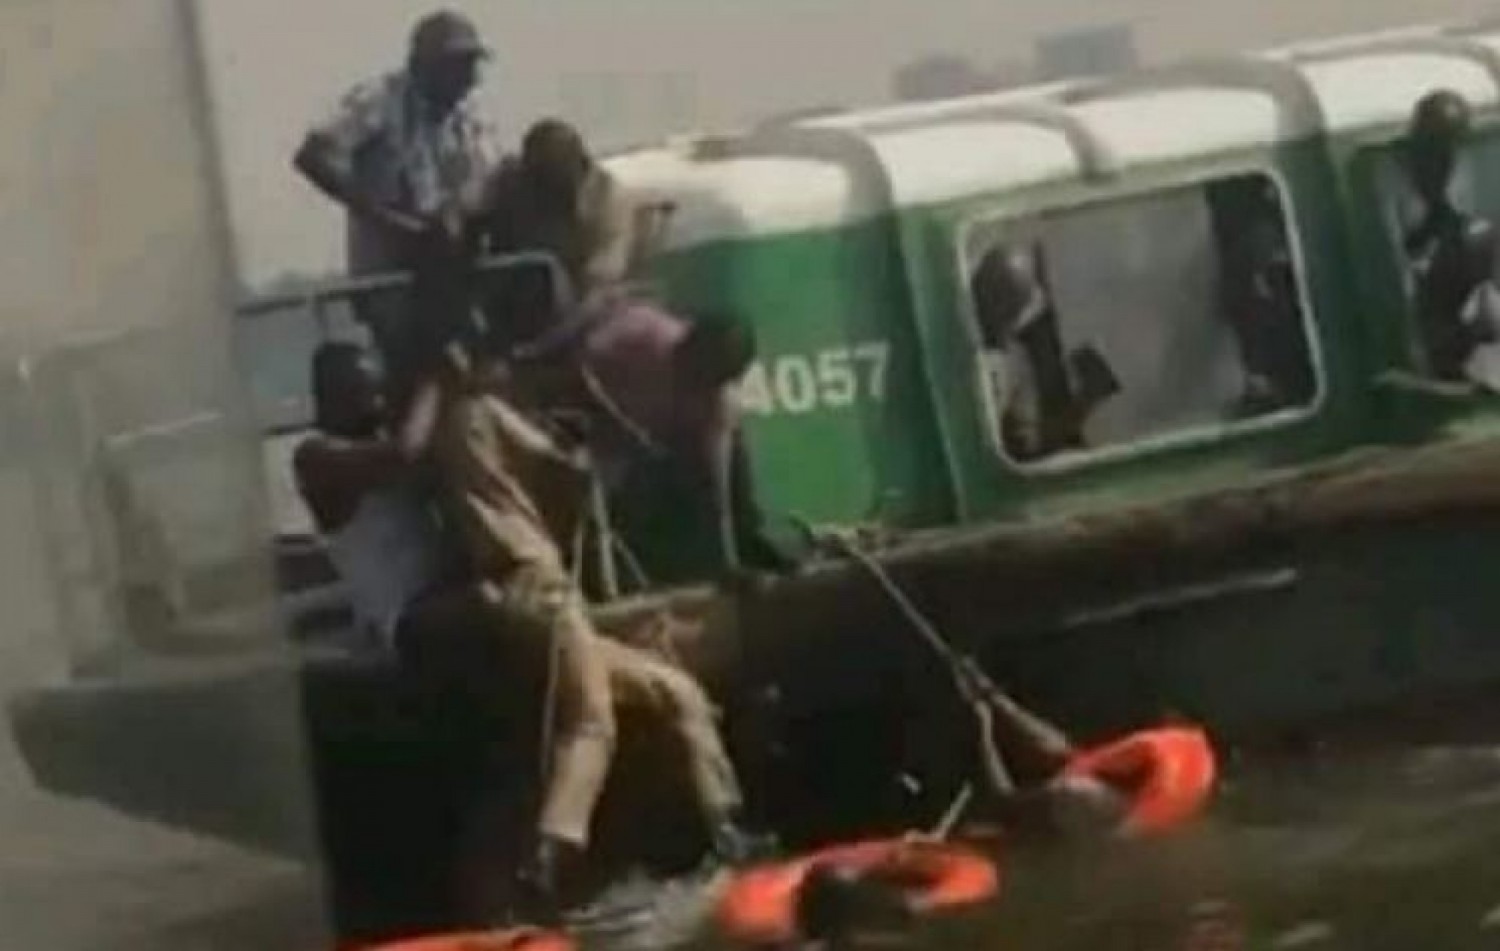 Côte d'Ivoire : Gare lagunaire du Plateau, un élève tente de se suicider en se jetant d'un bateau bus